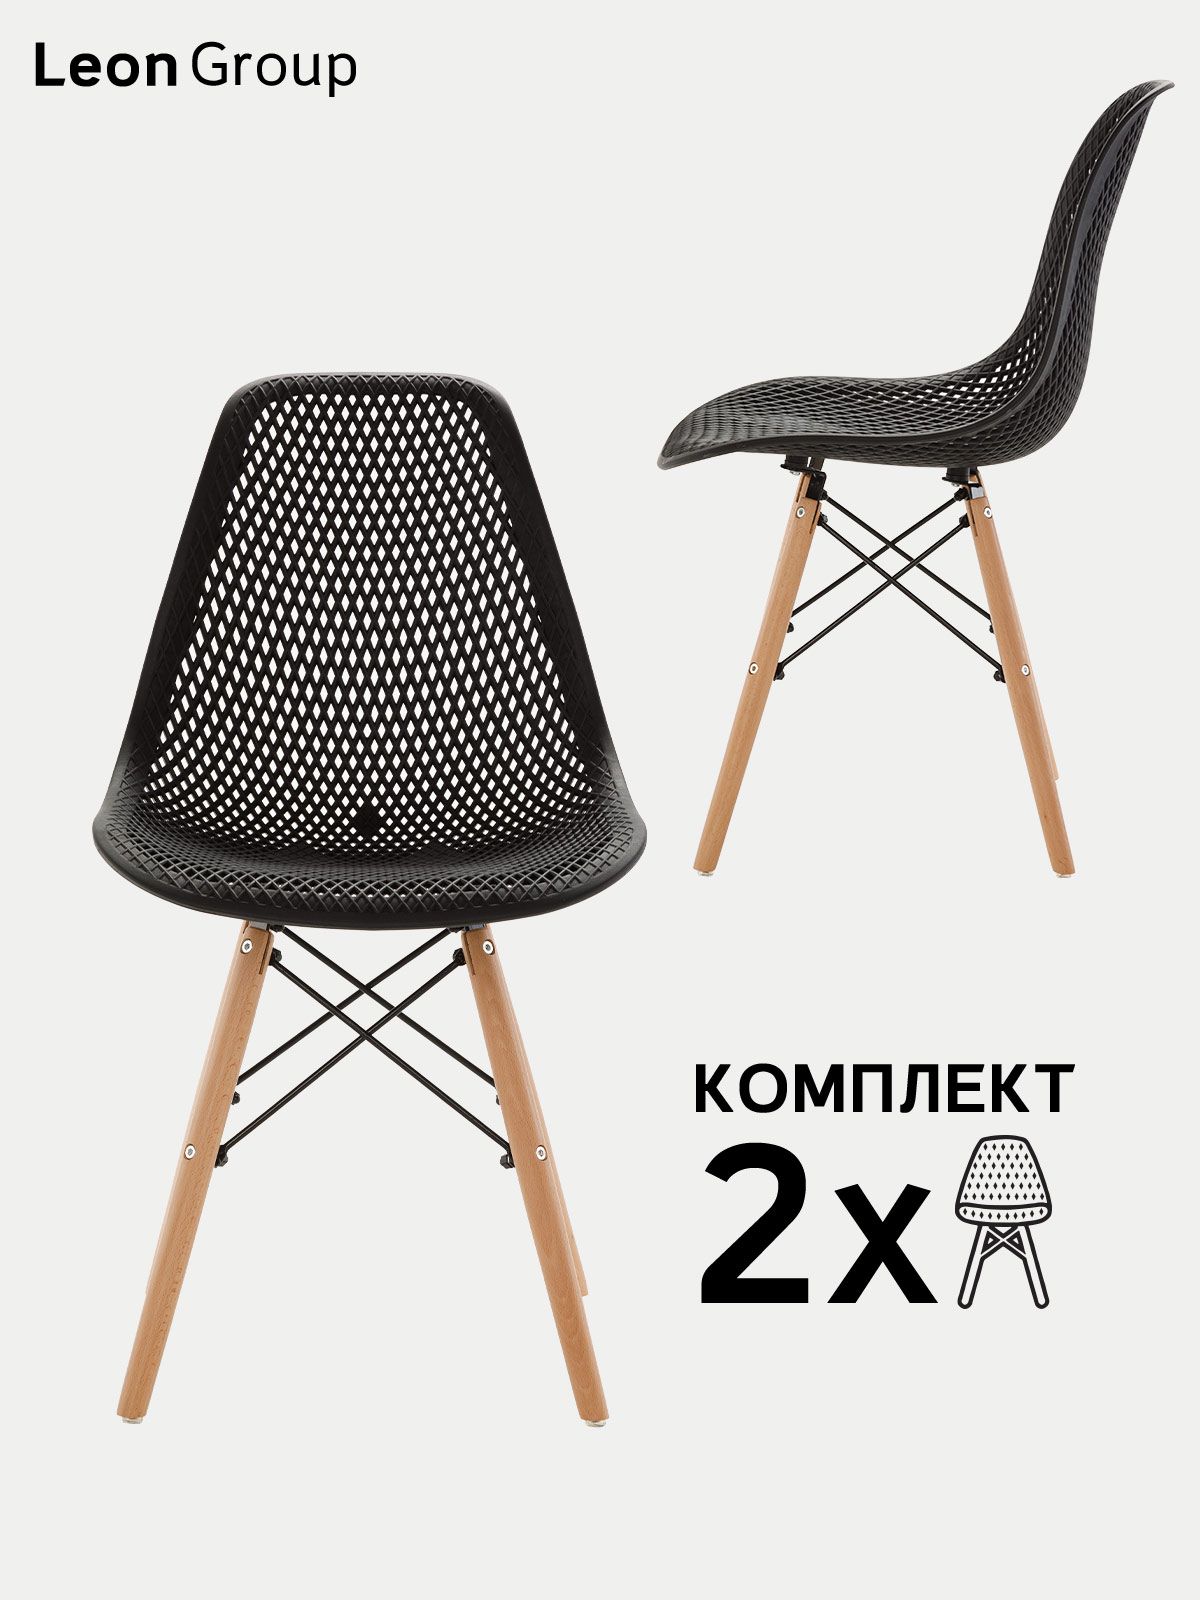 LEON GROUP Комплект стульев LEON GROUP в стиле EAMES DSW с перфорацией, 2 шт. Уцененный товар